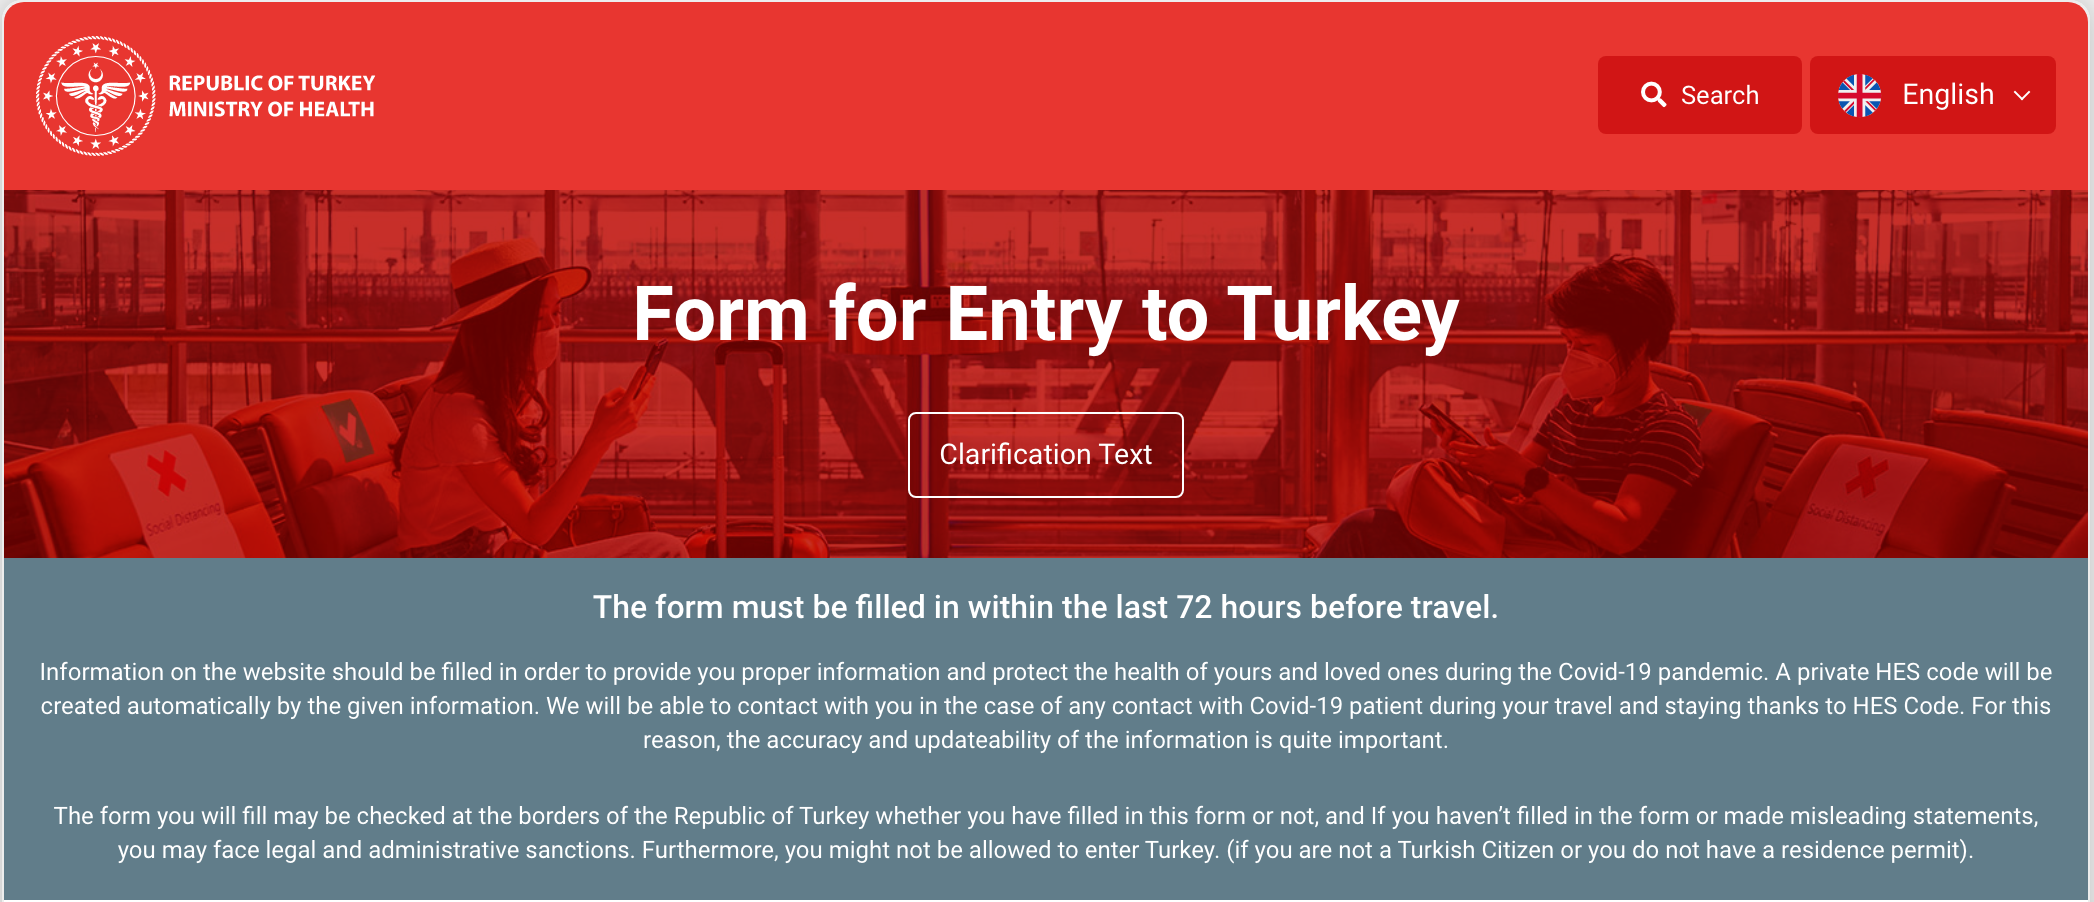 udfylder jeg til Tyrkiet? - vigtig information